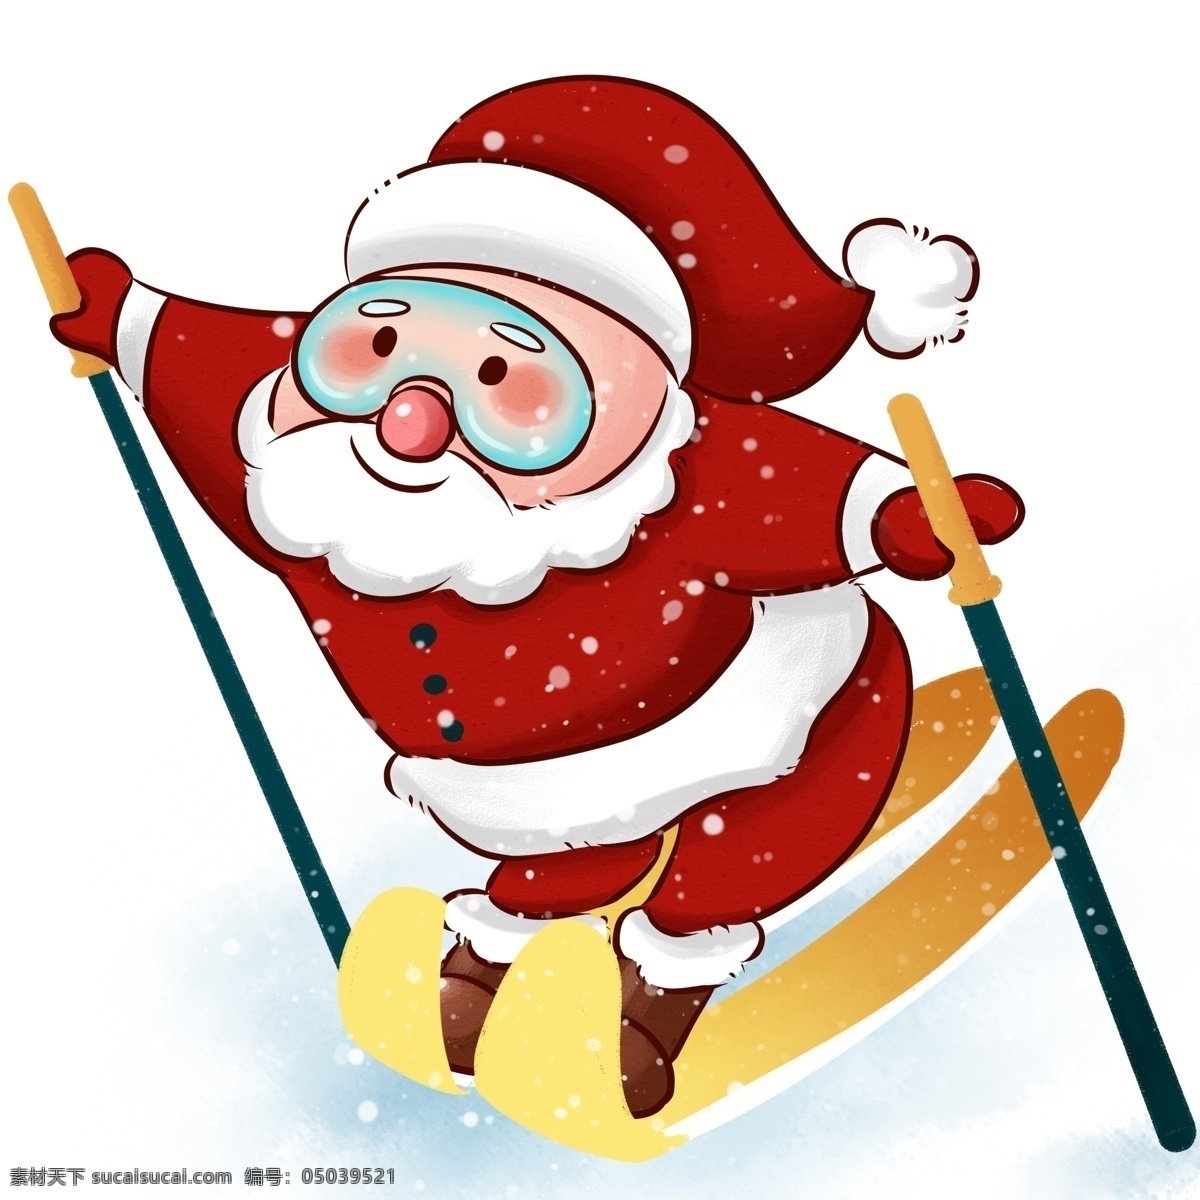 圣诞节 圣诞老人 滑 雪橇 节日 快乐 冬季 红色 装饰 圣诞 滑雪 雪地 下雪 冬天 冬日 滑雪板 卡通人物形象